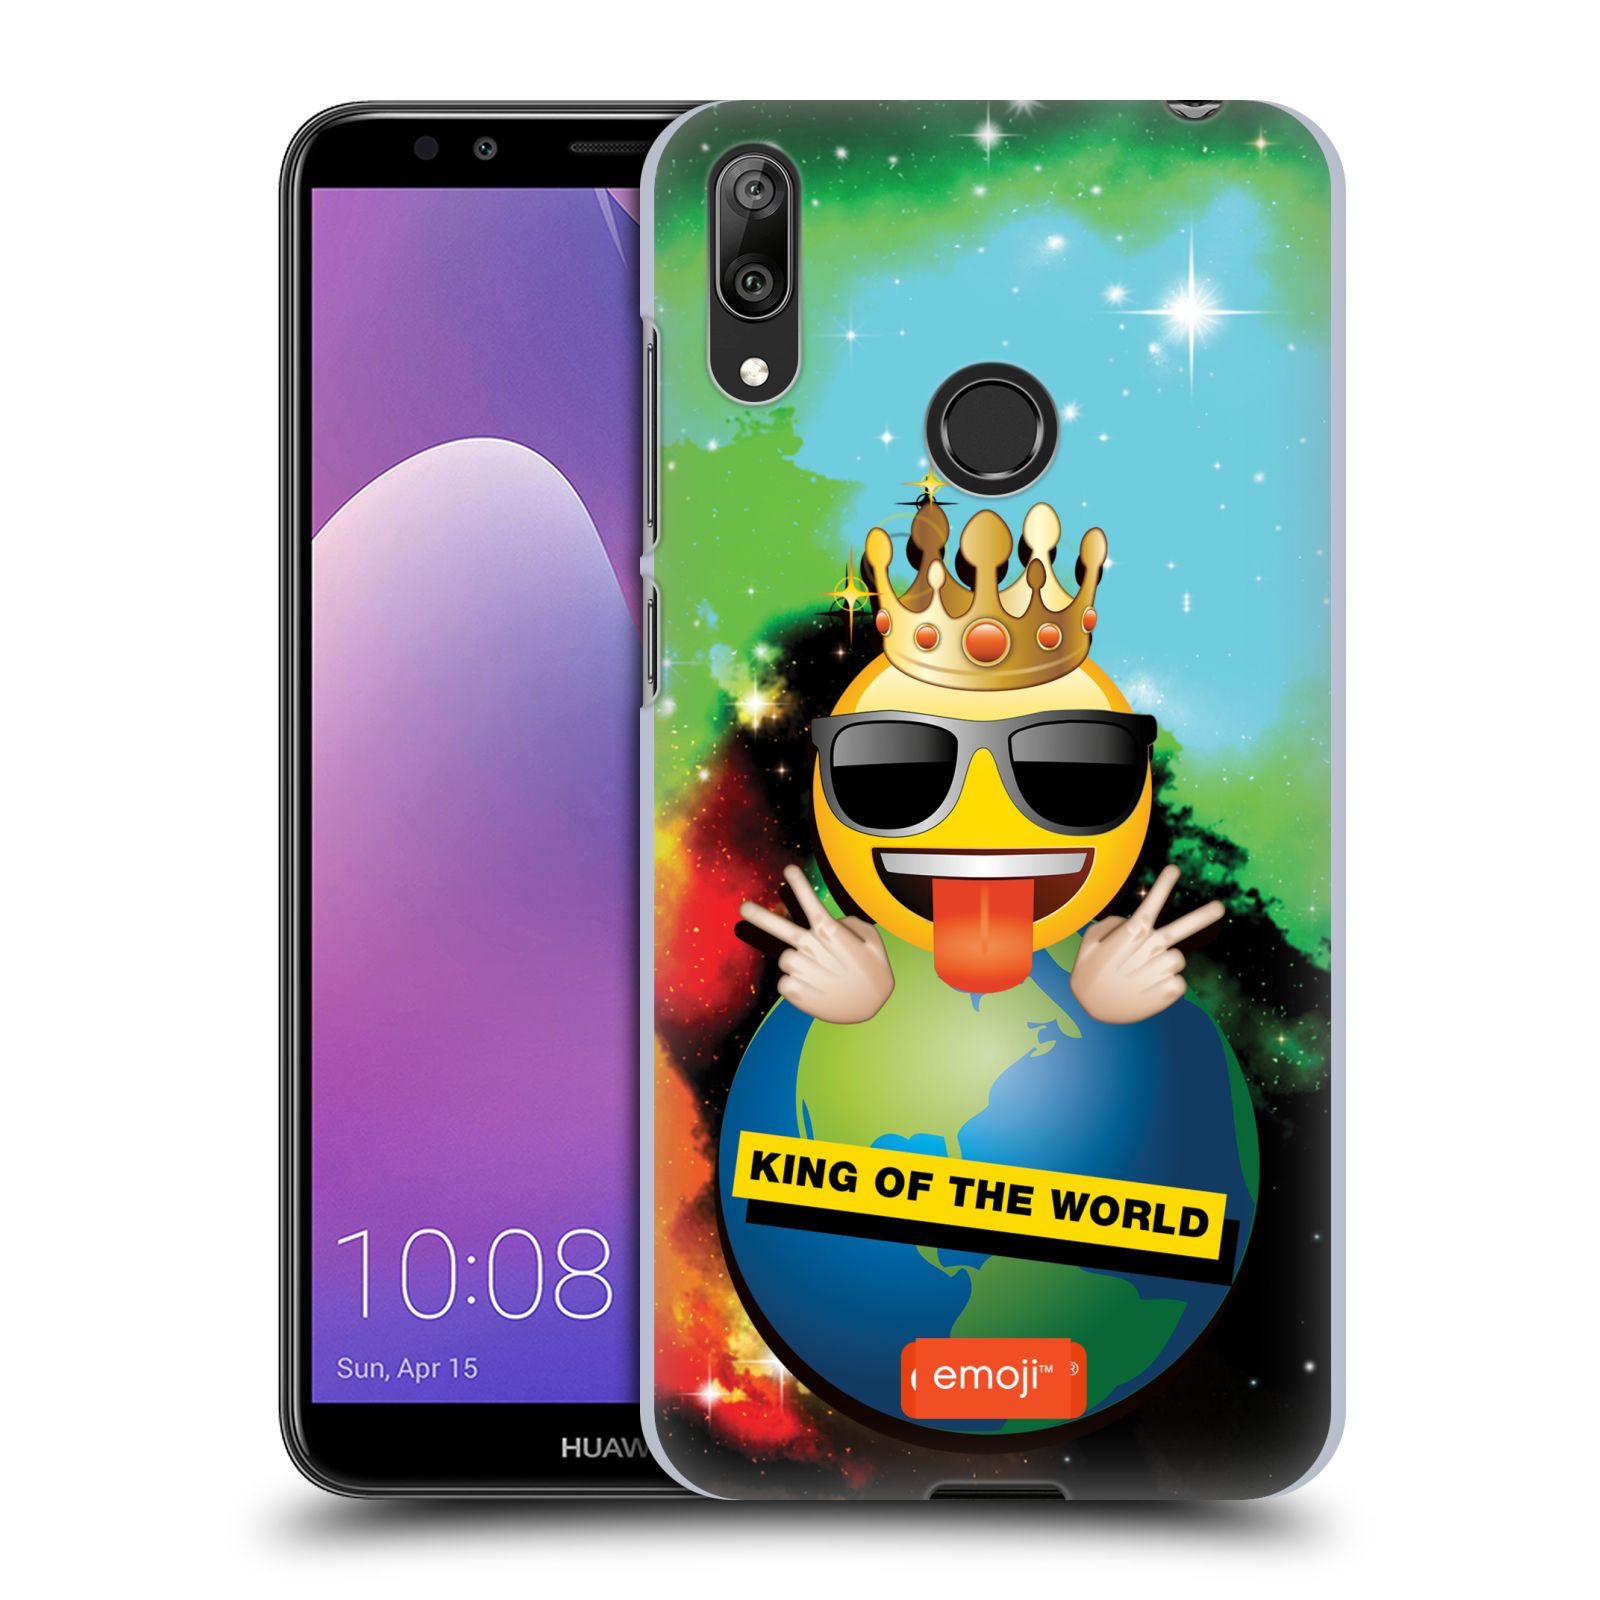 Pouzdro na mobil Huawei Y7 2019 - Head Case - smajlík oficiální kryt EMOJI velký smajlík král světa